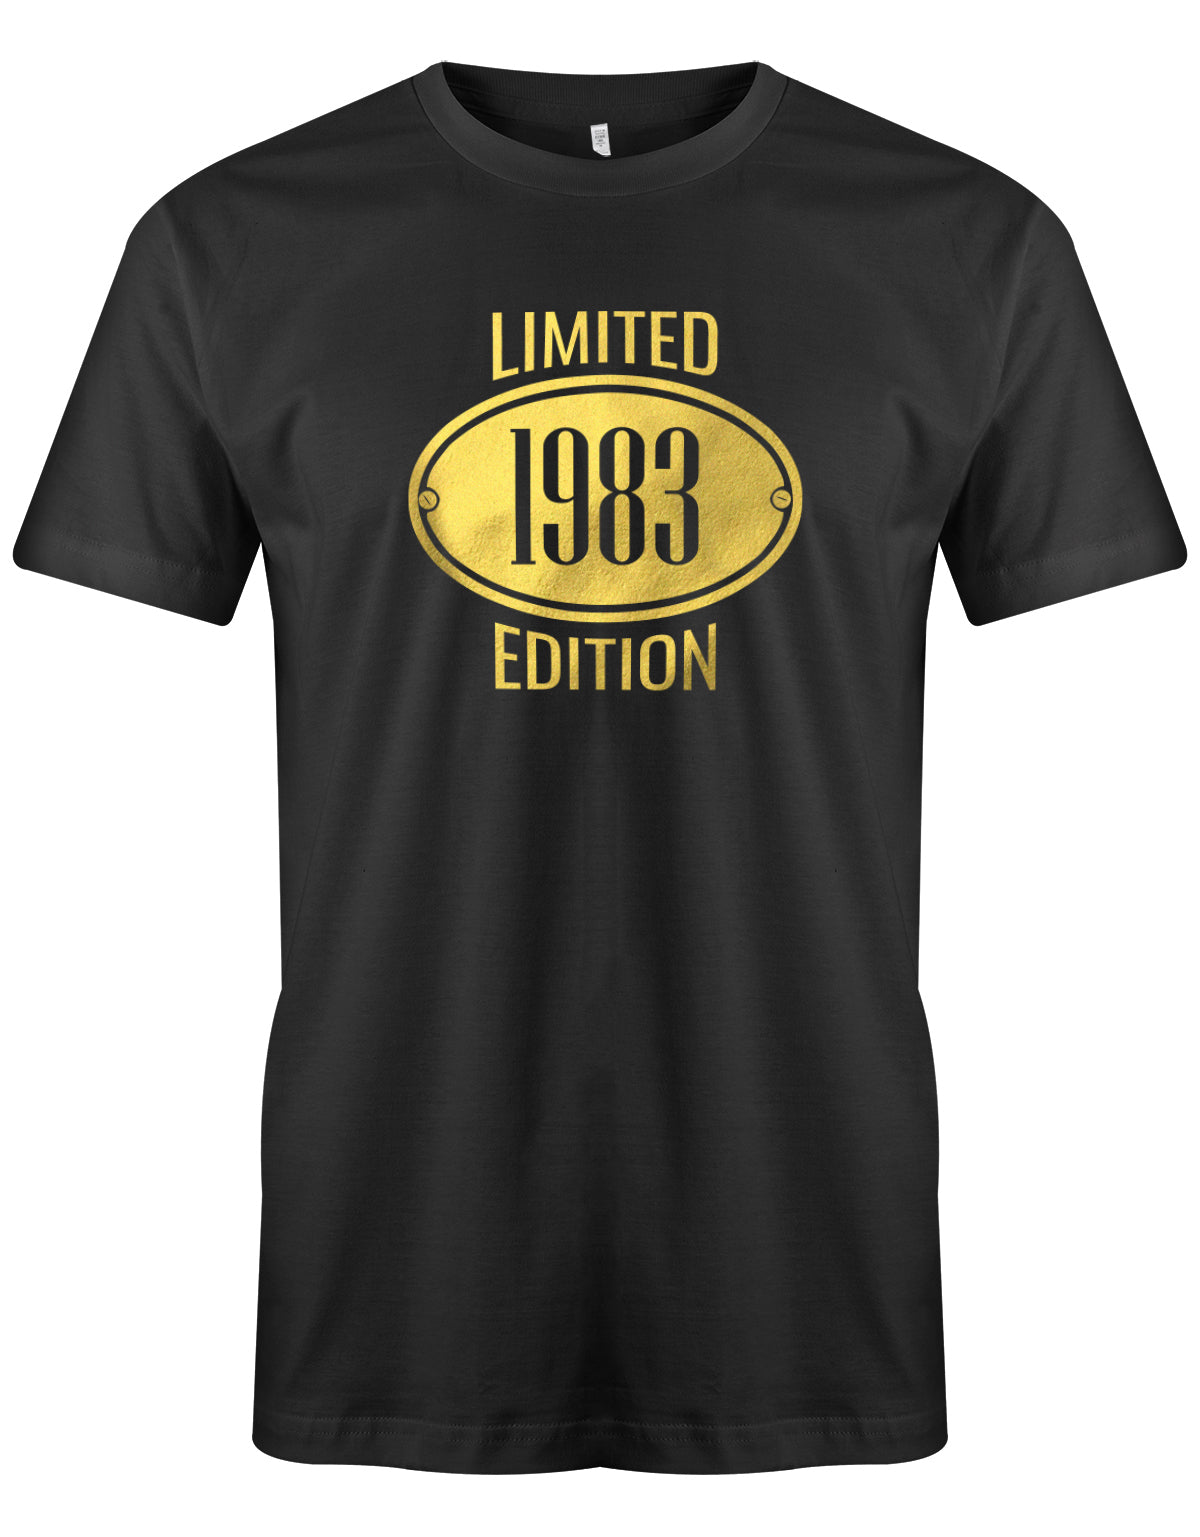 Limited Edition Gold 1983 - T-Shirt 40 Geburtstag Männer myShirtStore Schwarz